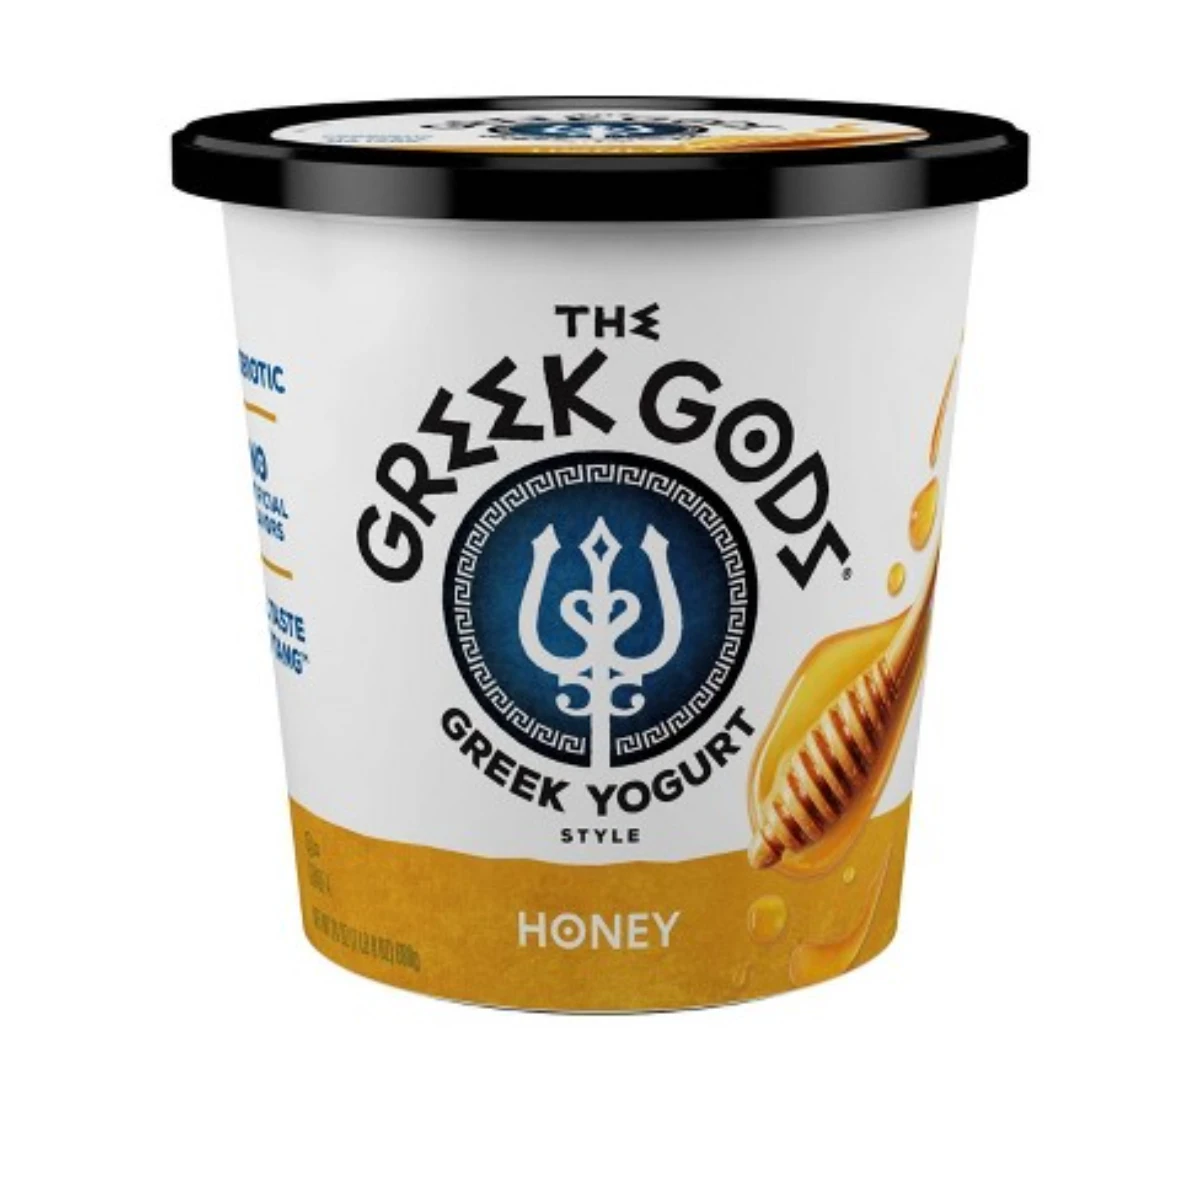 Greek Gods Honey Greek Yogurt